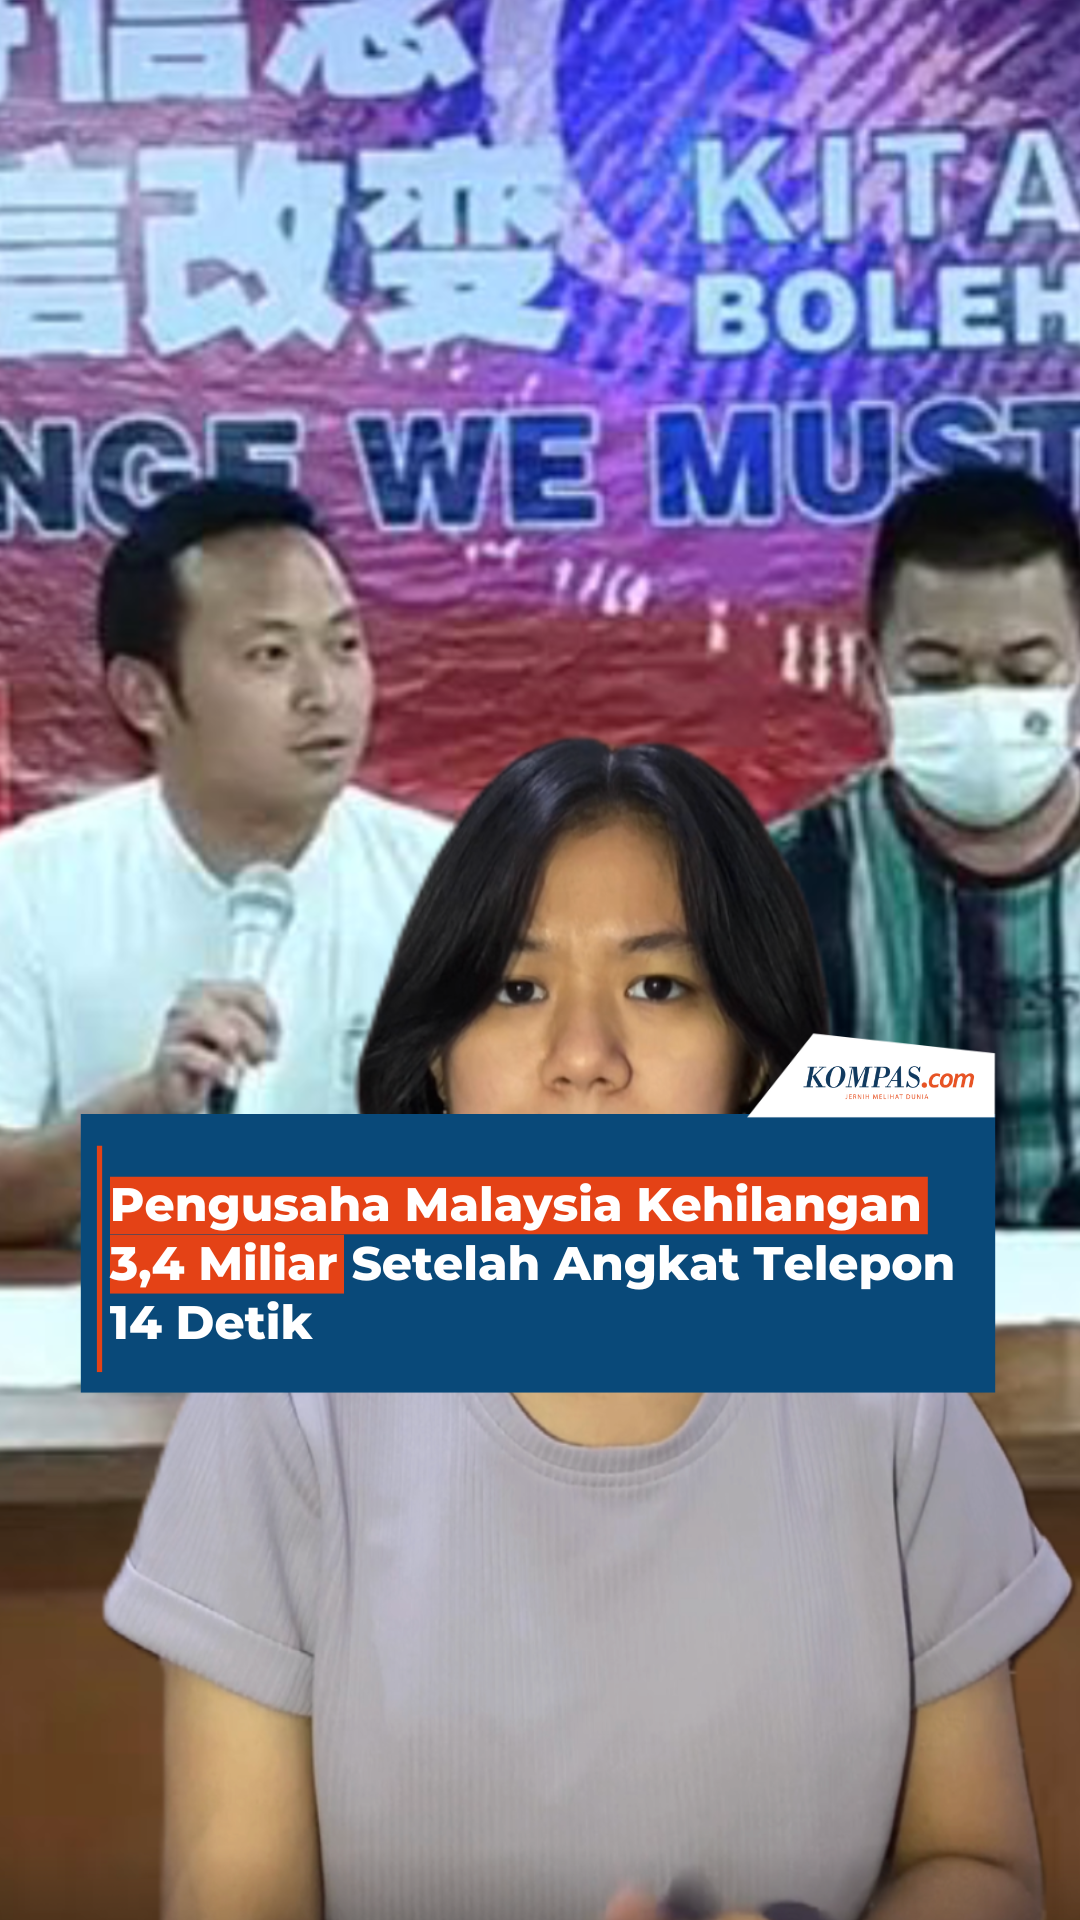 Pengusaha Malaysia Kehilangan 3,4 Miliar Setelah Angkat Telepon 14 Detik